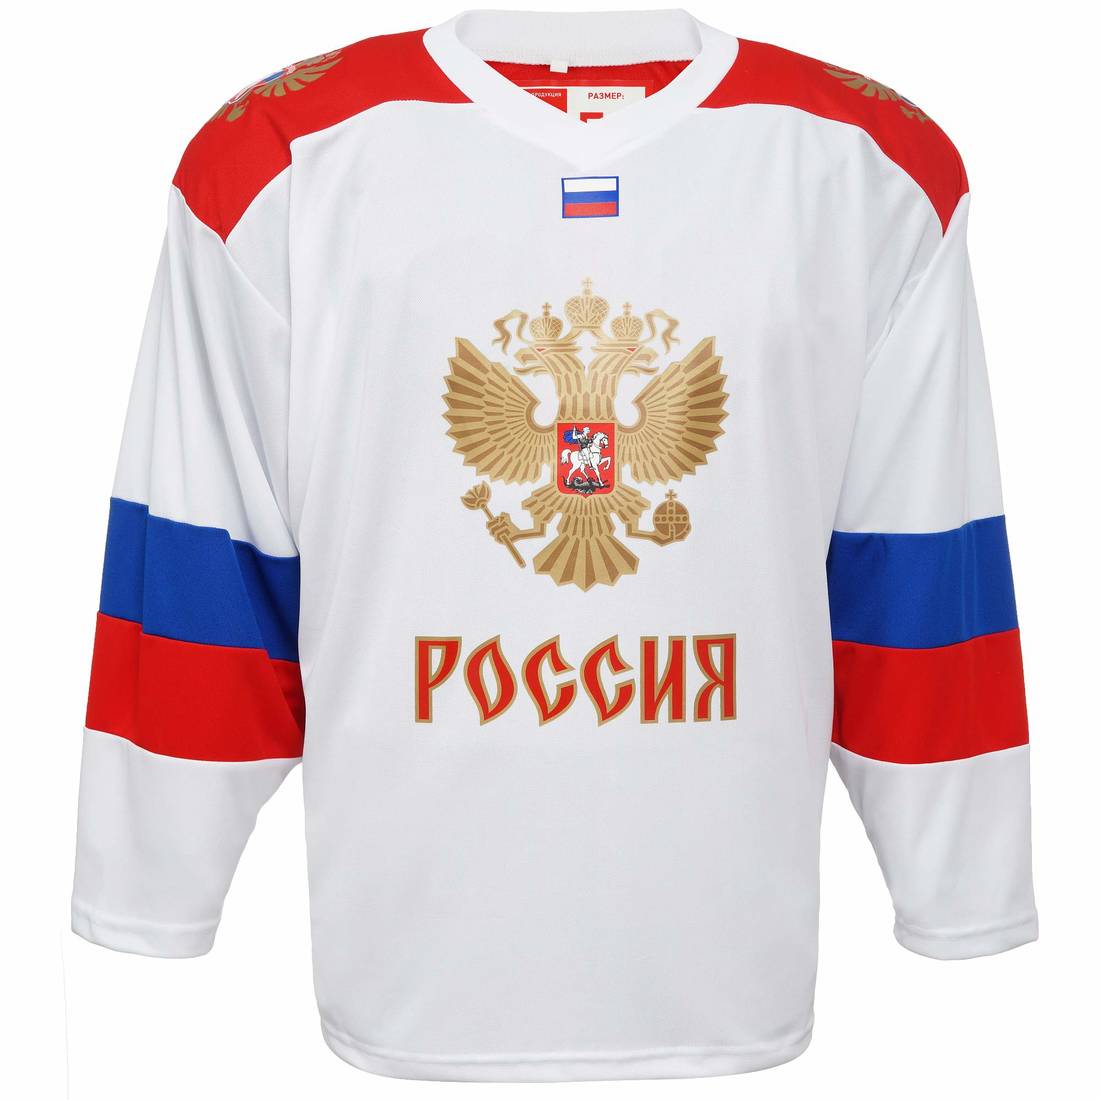 Свитер хоккейный сувенирный,арт.RE0021, красный